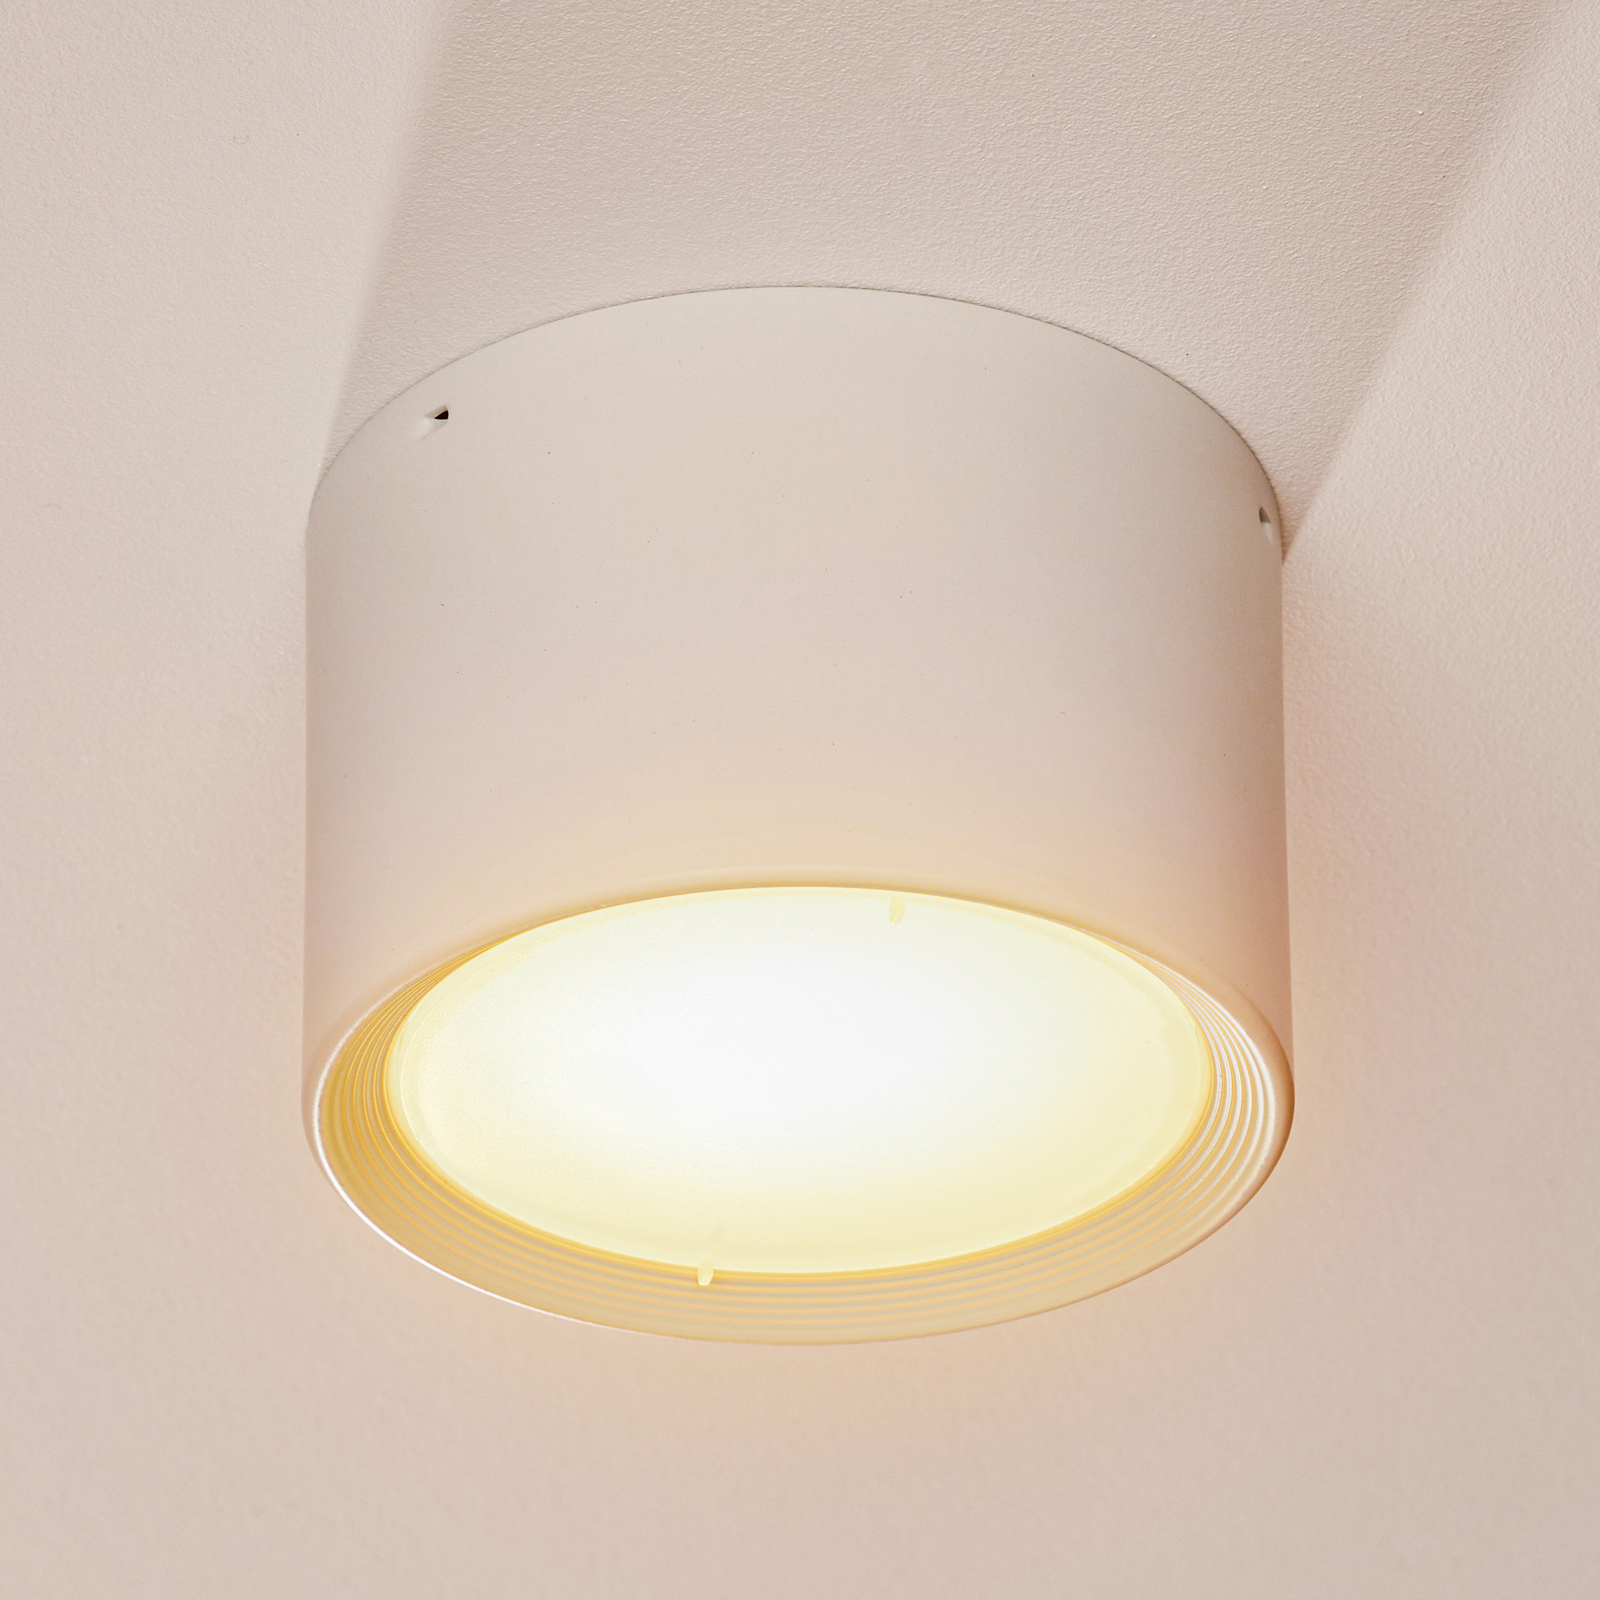 LED-Downlight Ita in Weiß mit Diffusor, Ø 12 cm